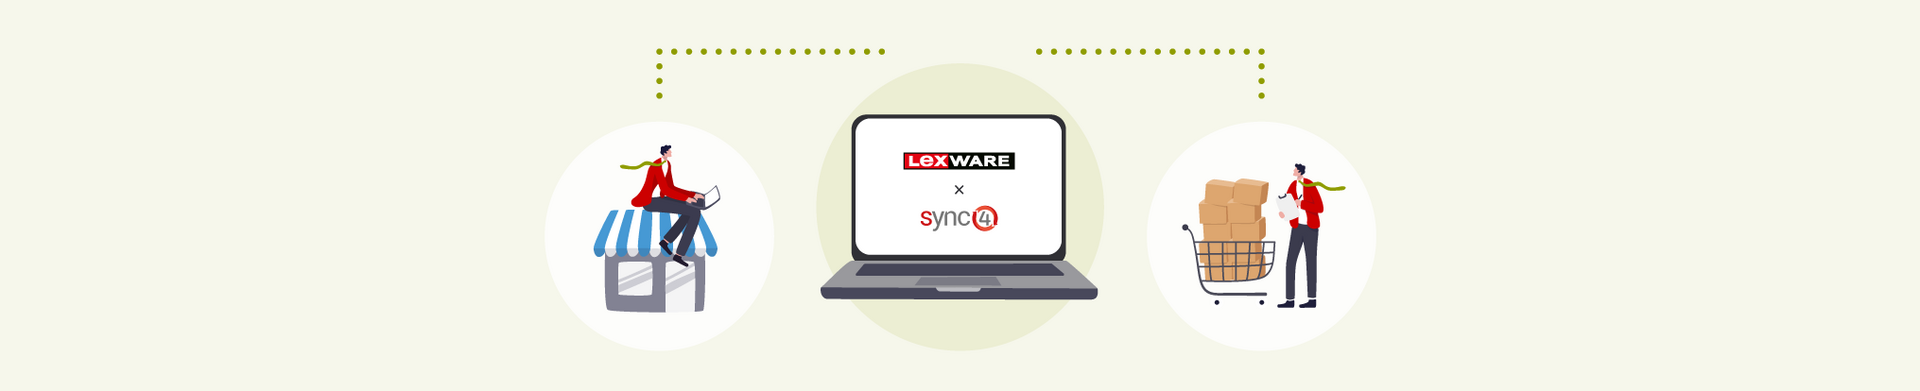 Illustrationsgrafik Lexware x sycn4: Darstellung eines Laptops mit Schnittstellen zwischen Onlineshop und Lexware warenwirtschaft